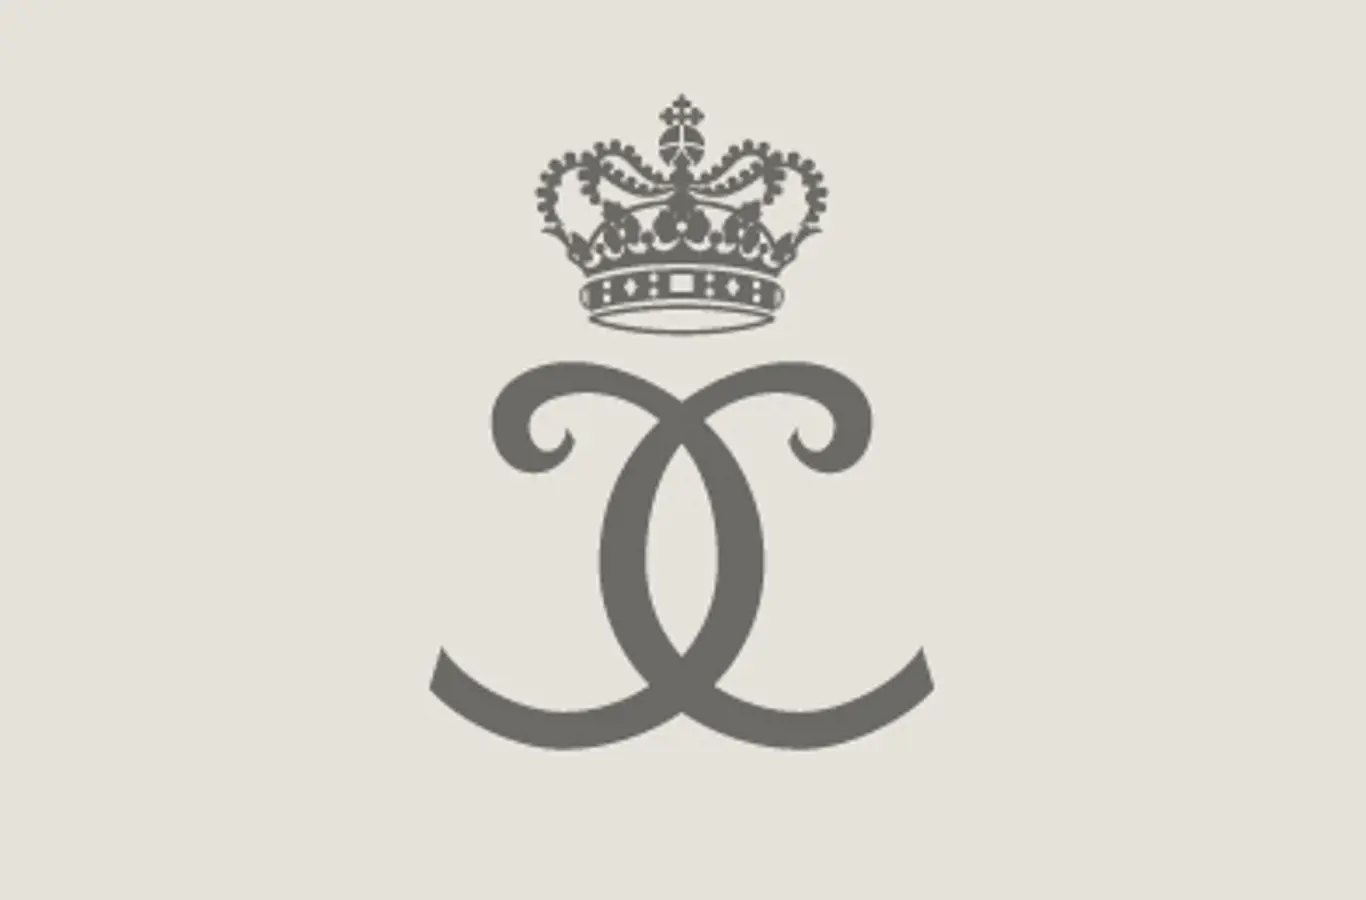 Hans Kongelige Højhed Prins Christians monogram